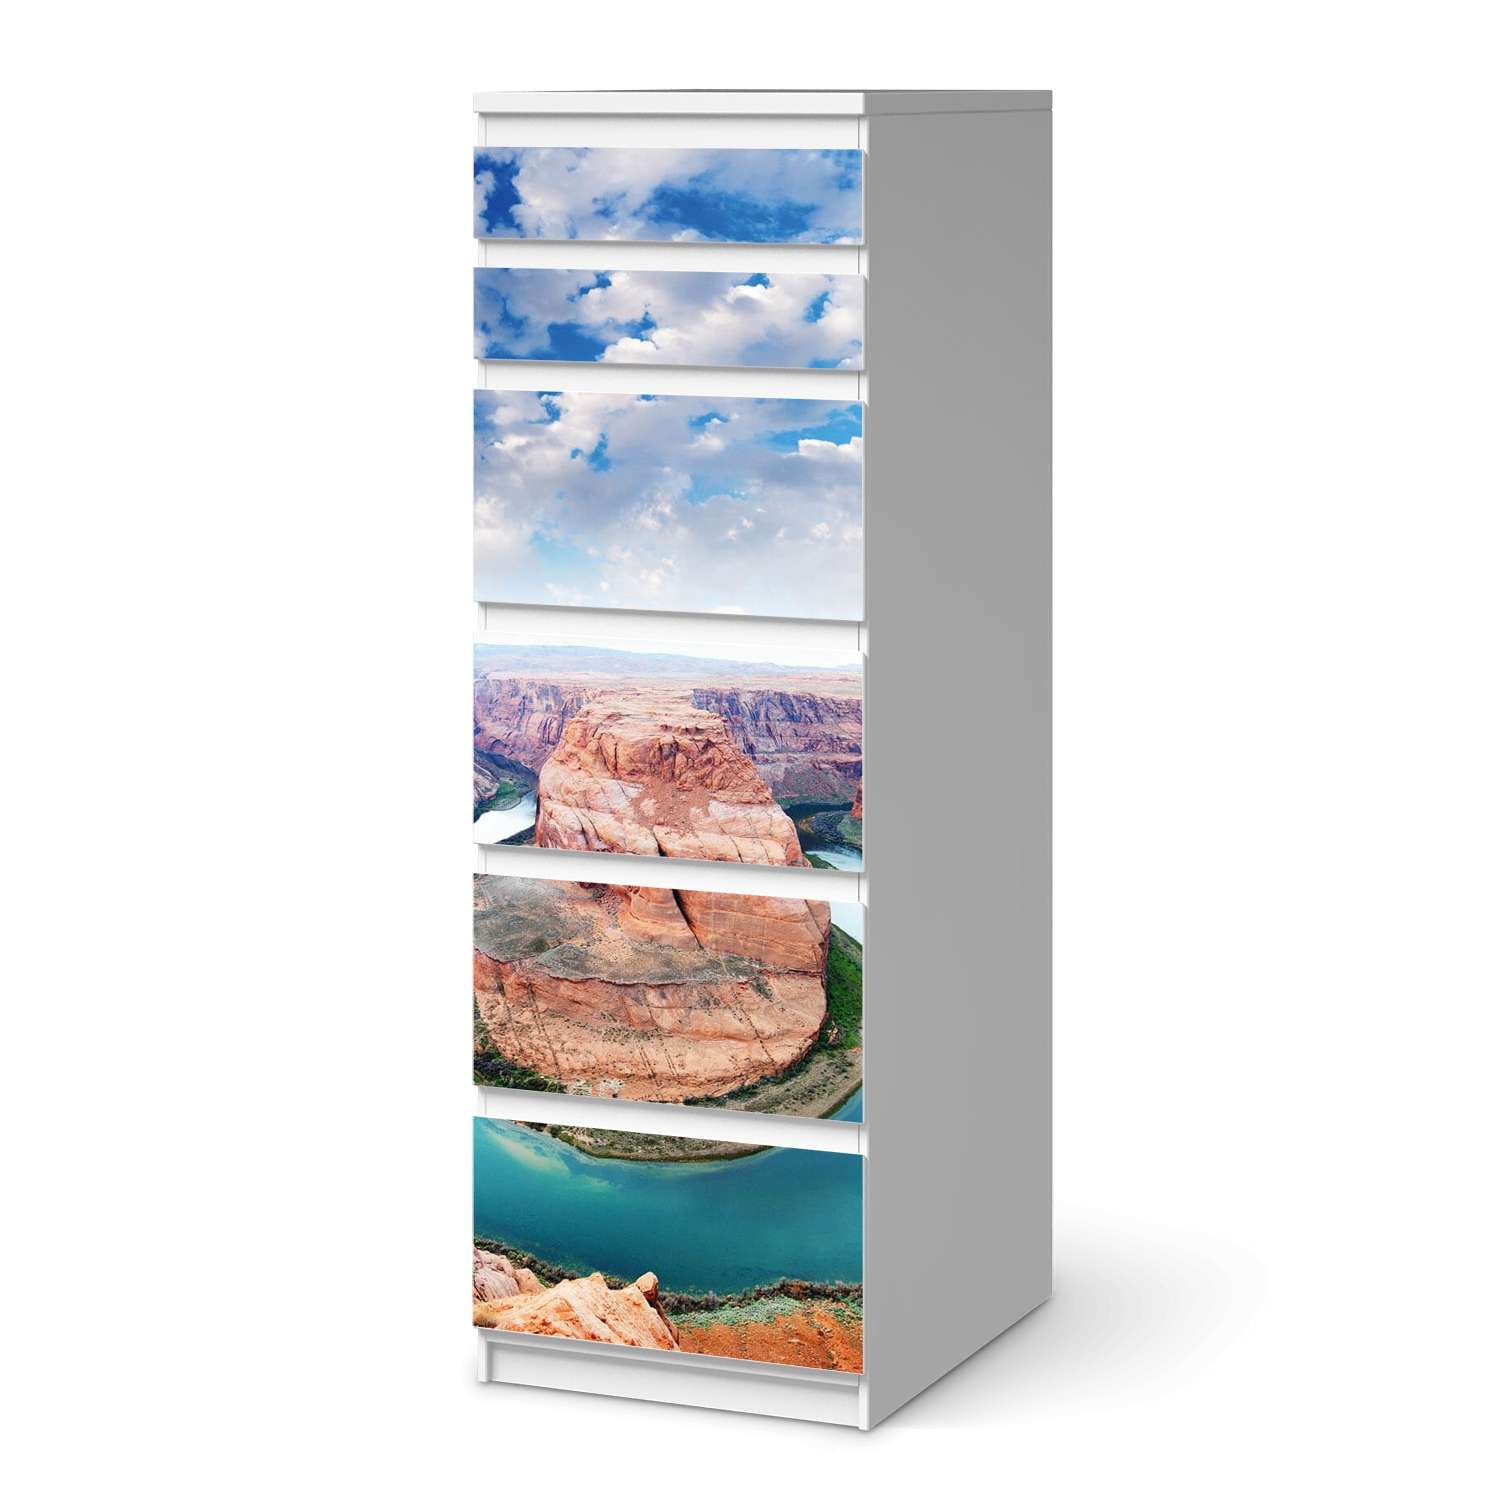 Klebefolie IKEA Malm Kommode 6 Schubladen (schmal) - Design: Grand Canyon von creatisto